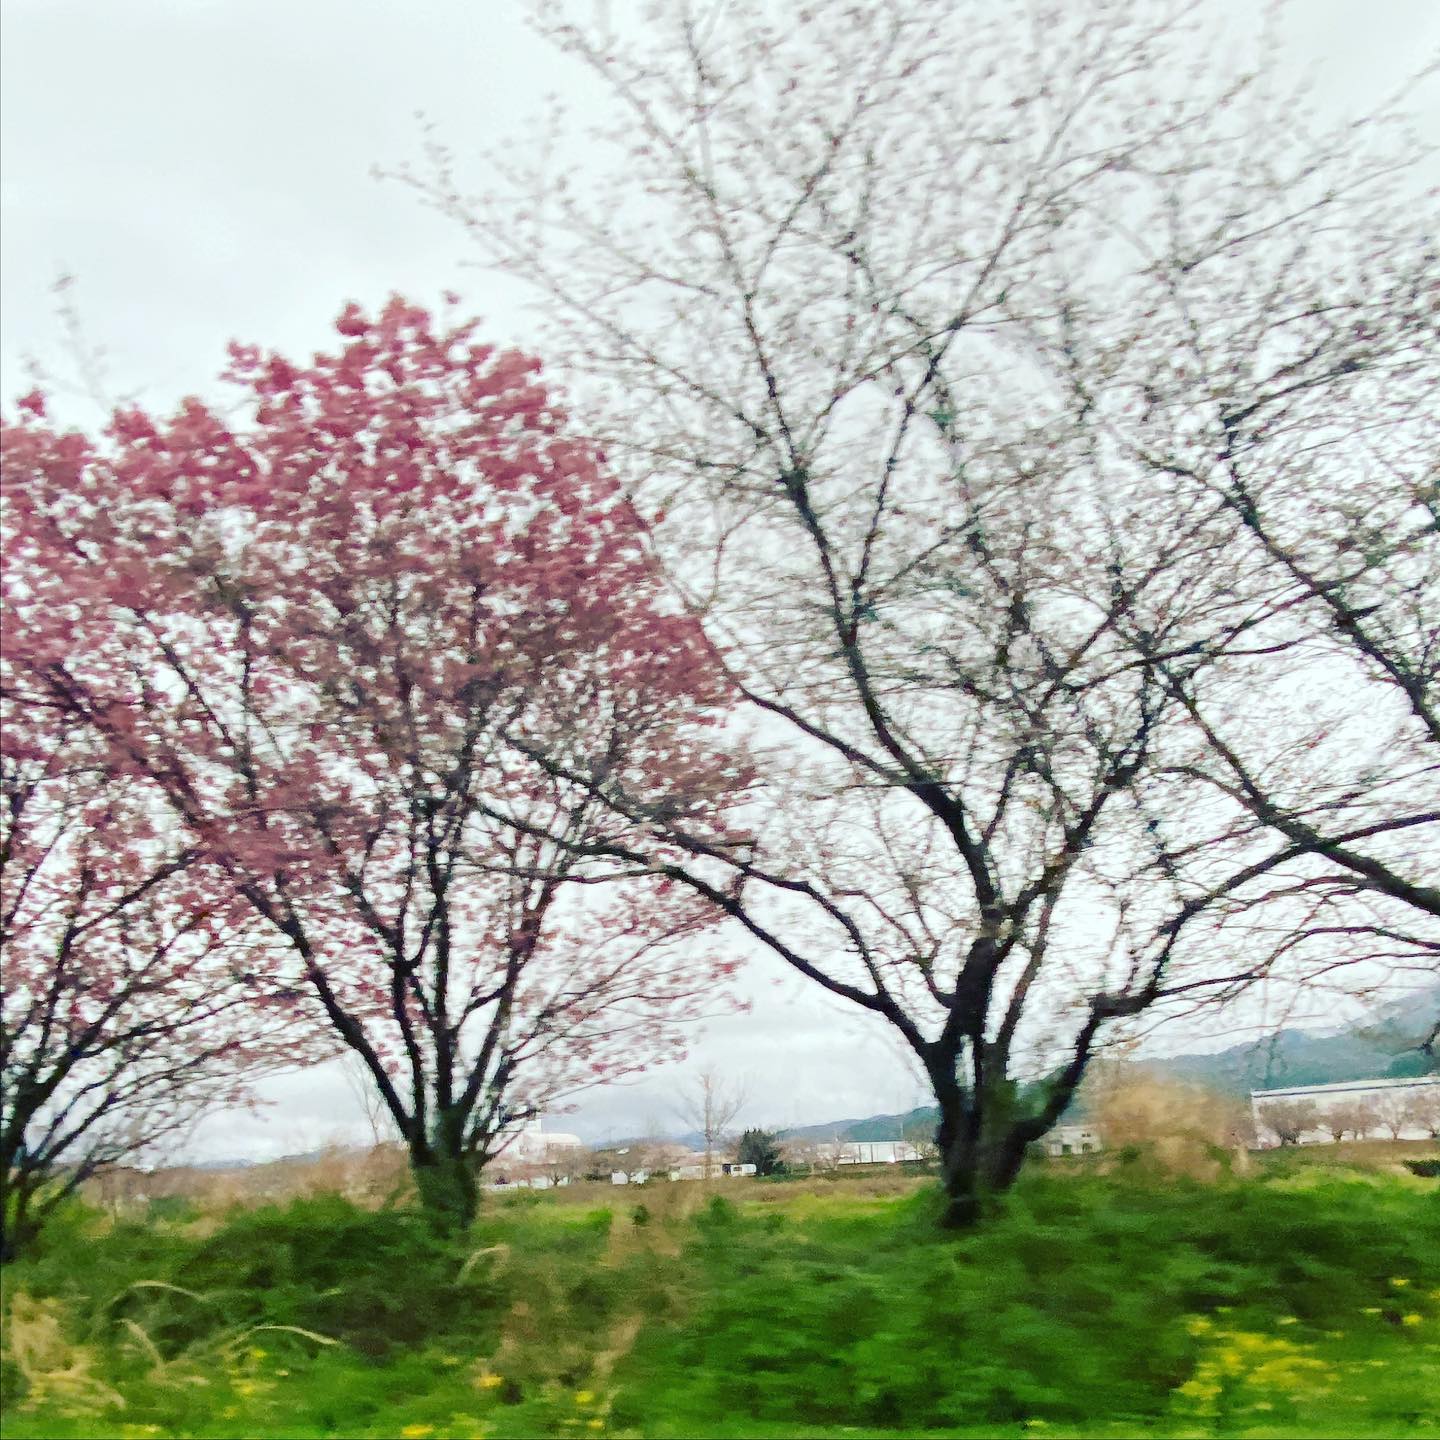 今日（2021/3/21）の桜@東温市見奈良重信川河川敷消防署側の早咲き桜（陽光？）はほぼ満開。対岸のふれあい広場や茶堂公園のソメイヨシノは、1分咲きぐらい。次の土日が見頃ですね。#サクラ #東温市 #重信川